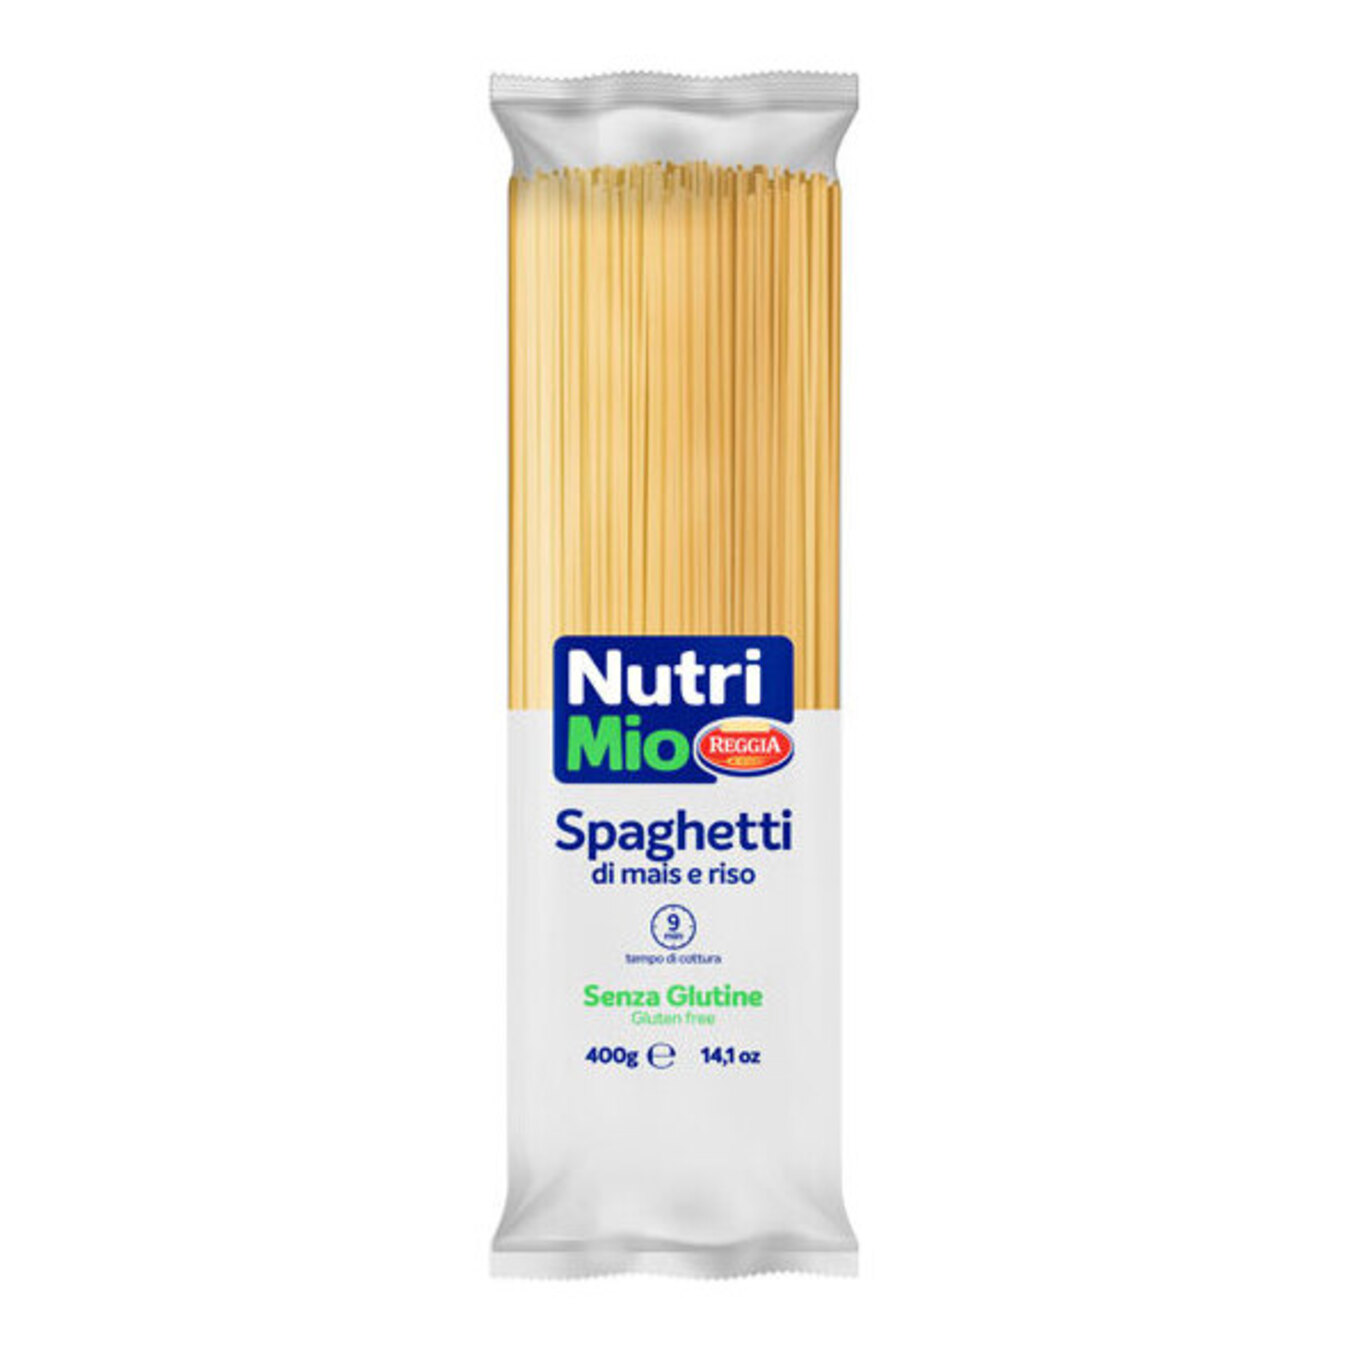 Pasta Reggia NutriMio Spaghetti 400g